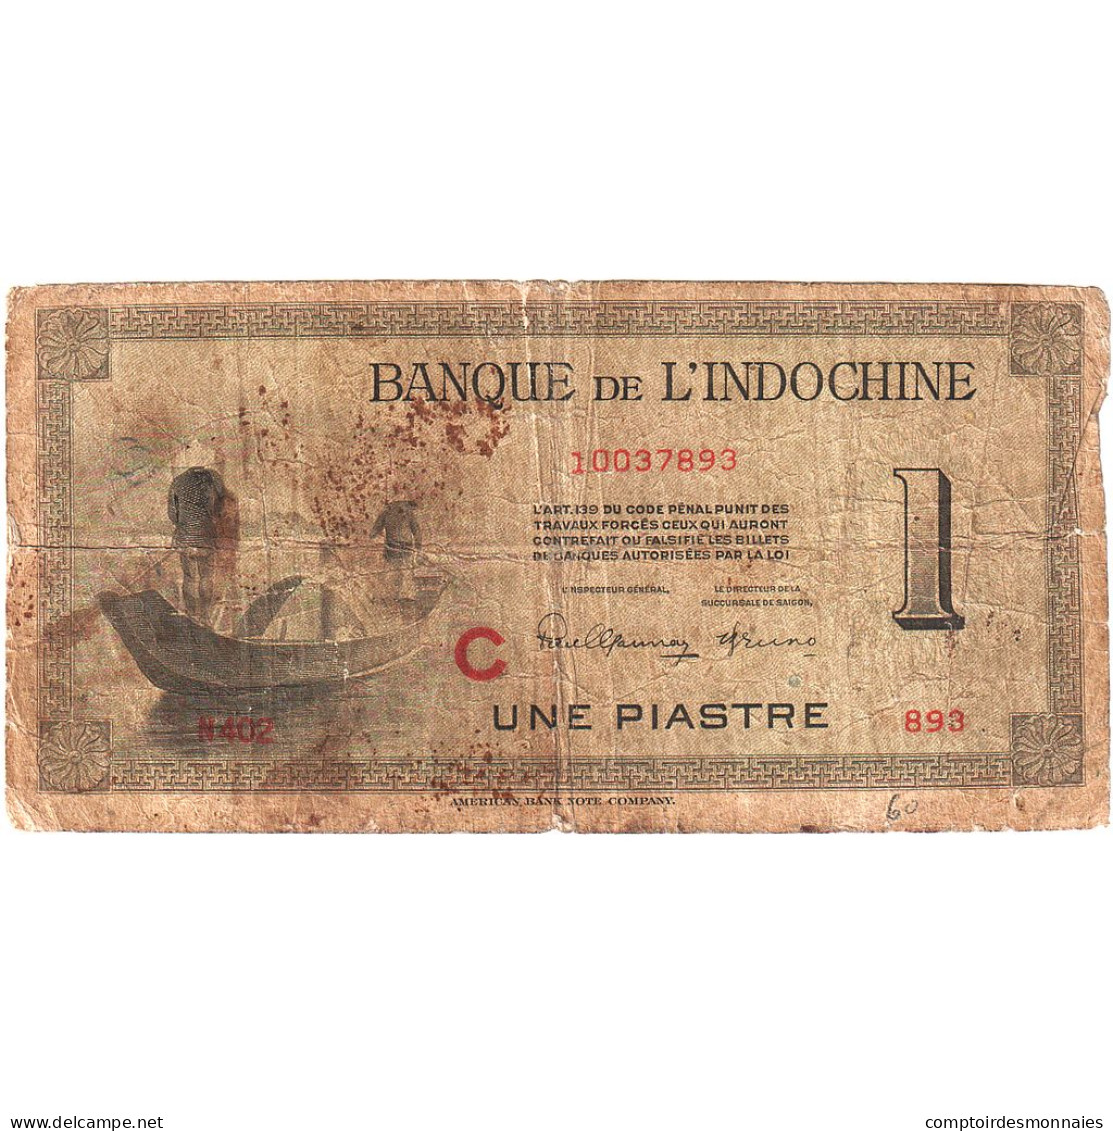 Indochine Française, 1 Piastre, 1945, KM:76a, B - Indochina